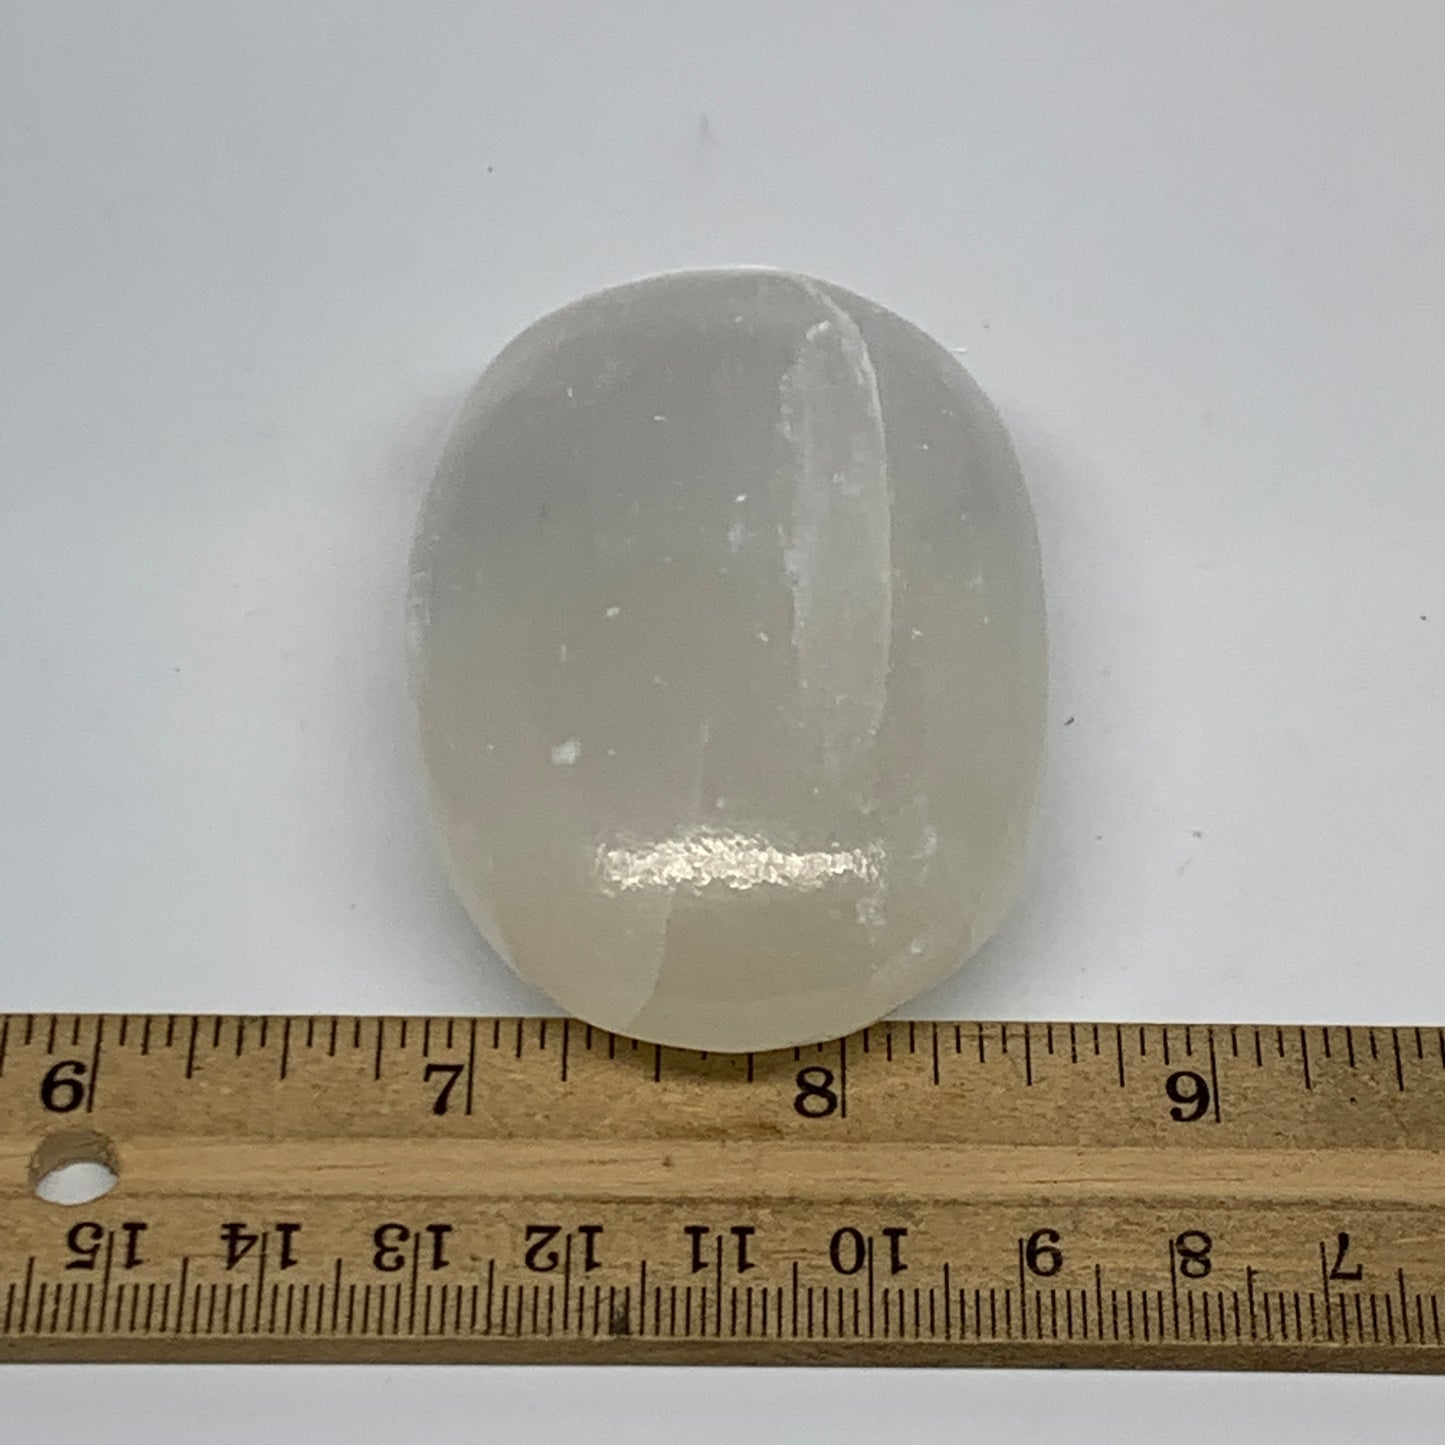 107g, 2.8"x1.8"x1", White Satin Spar (Selenite) Palmstone Crystal Gypsum, B22582